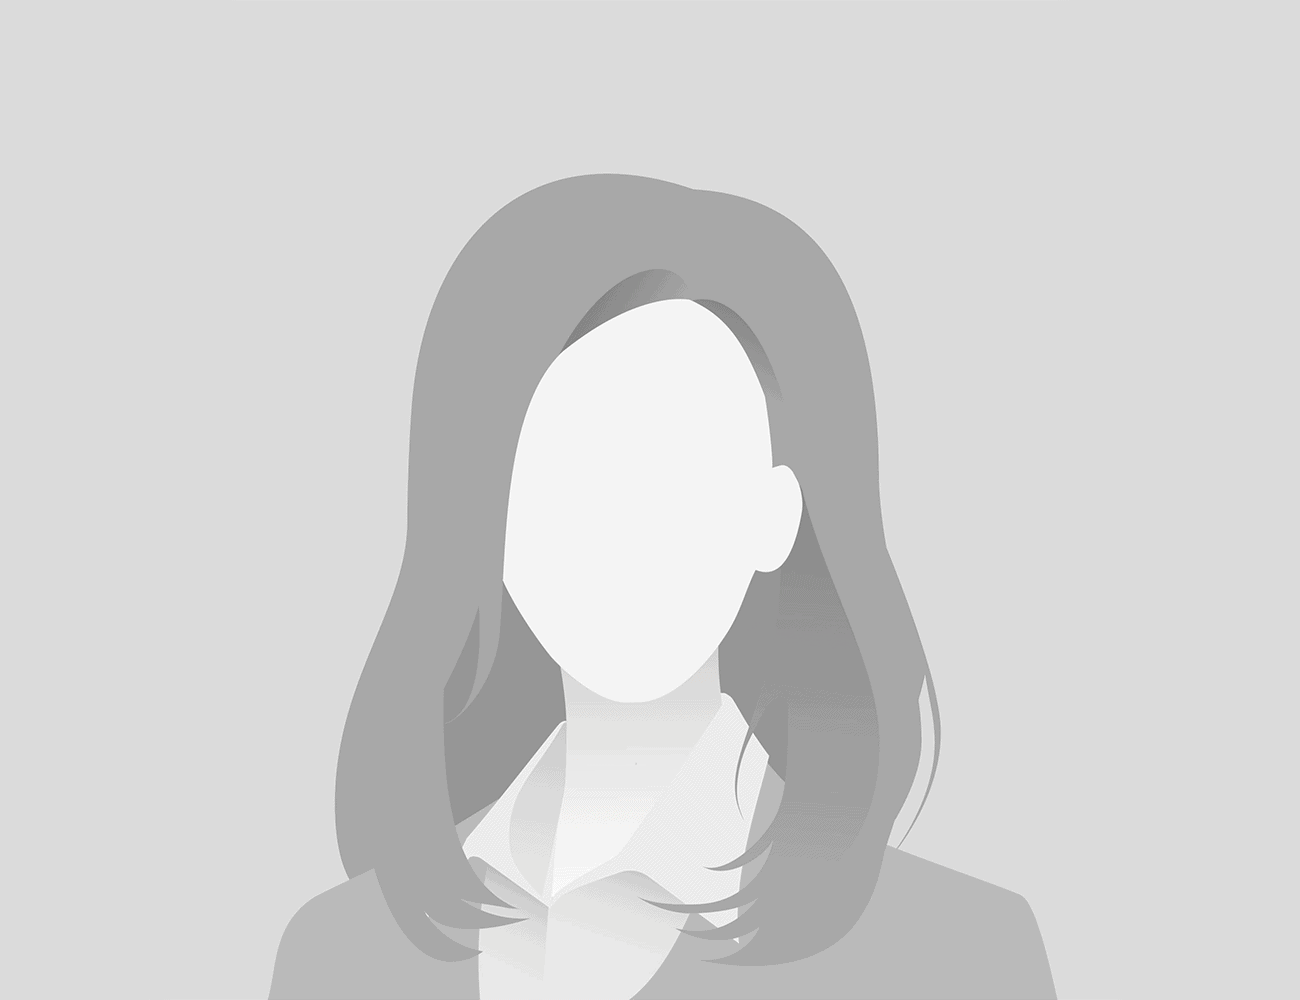 černobílá ilustrace anonymní ženy